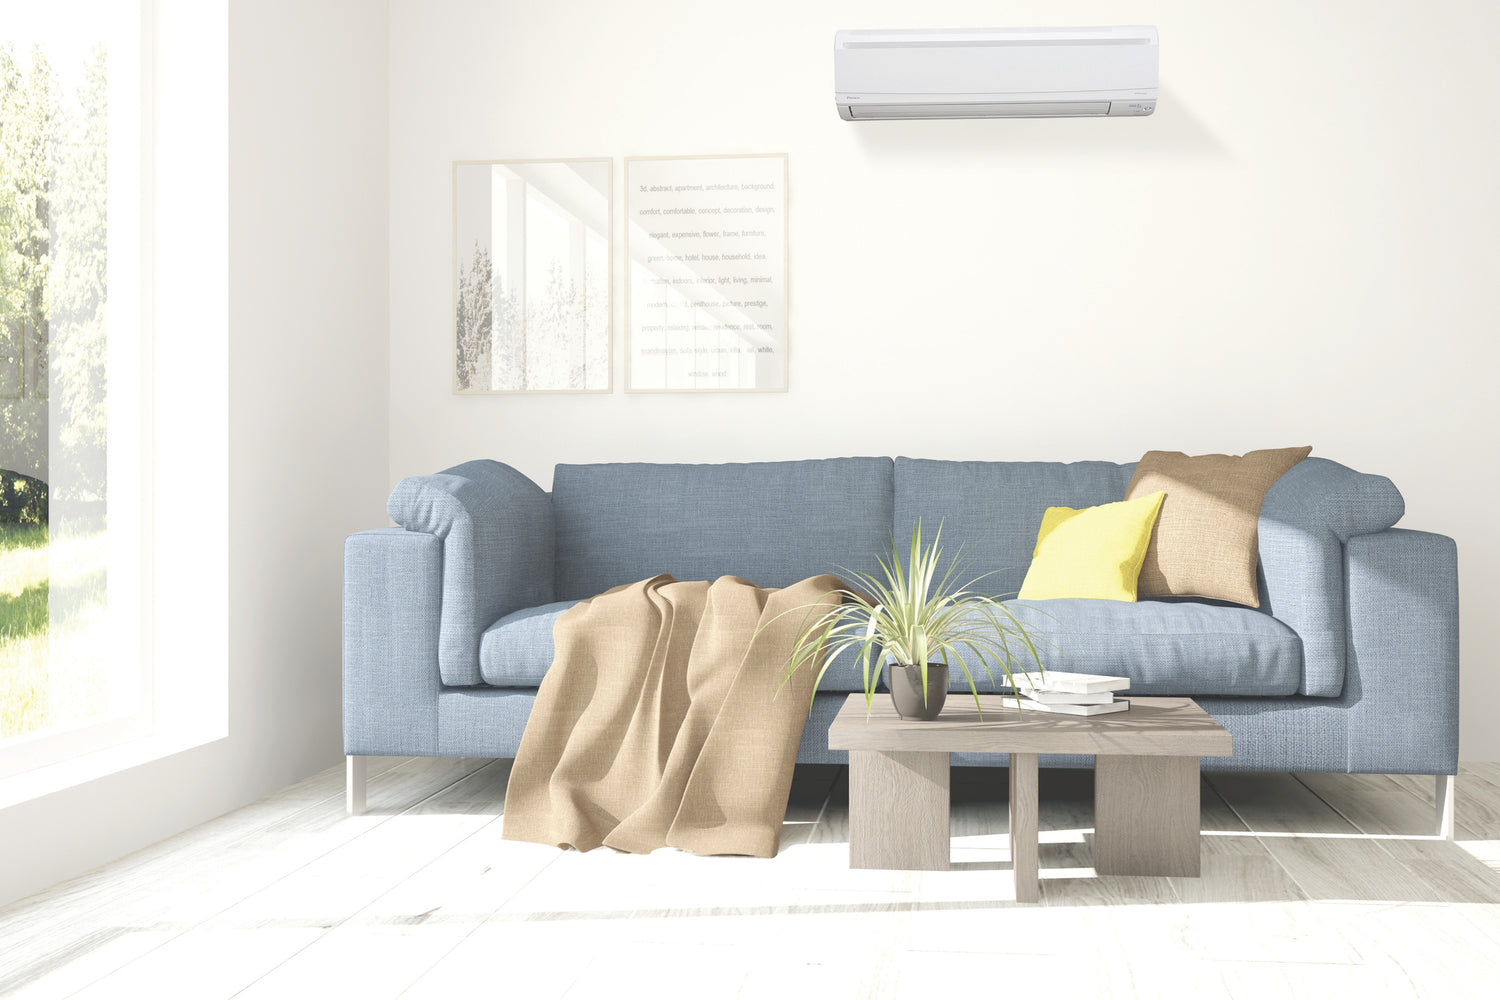 Cum aleg un aer conditionat potrivit pentru casa mea?